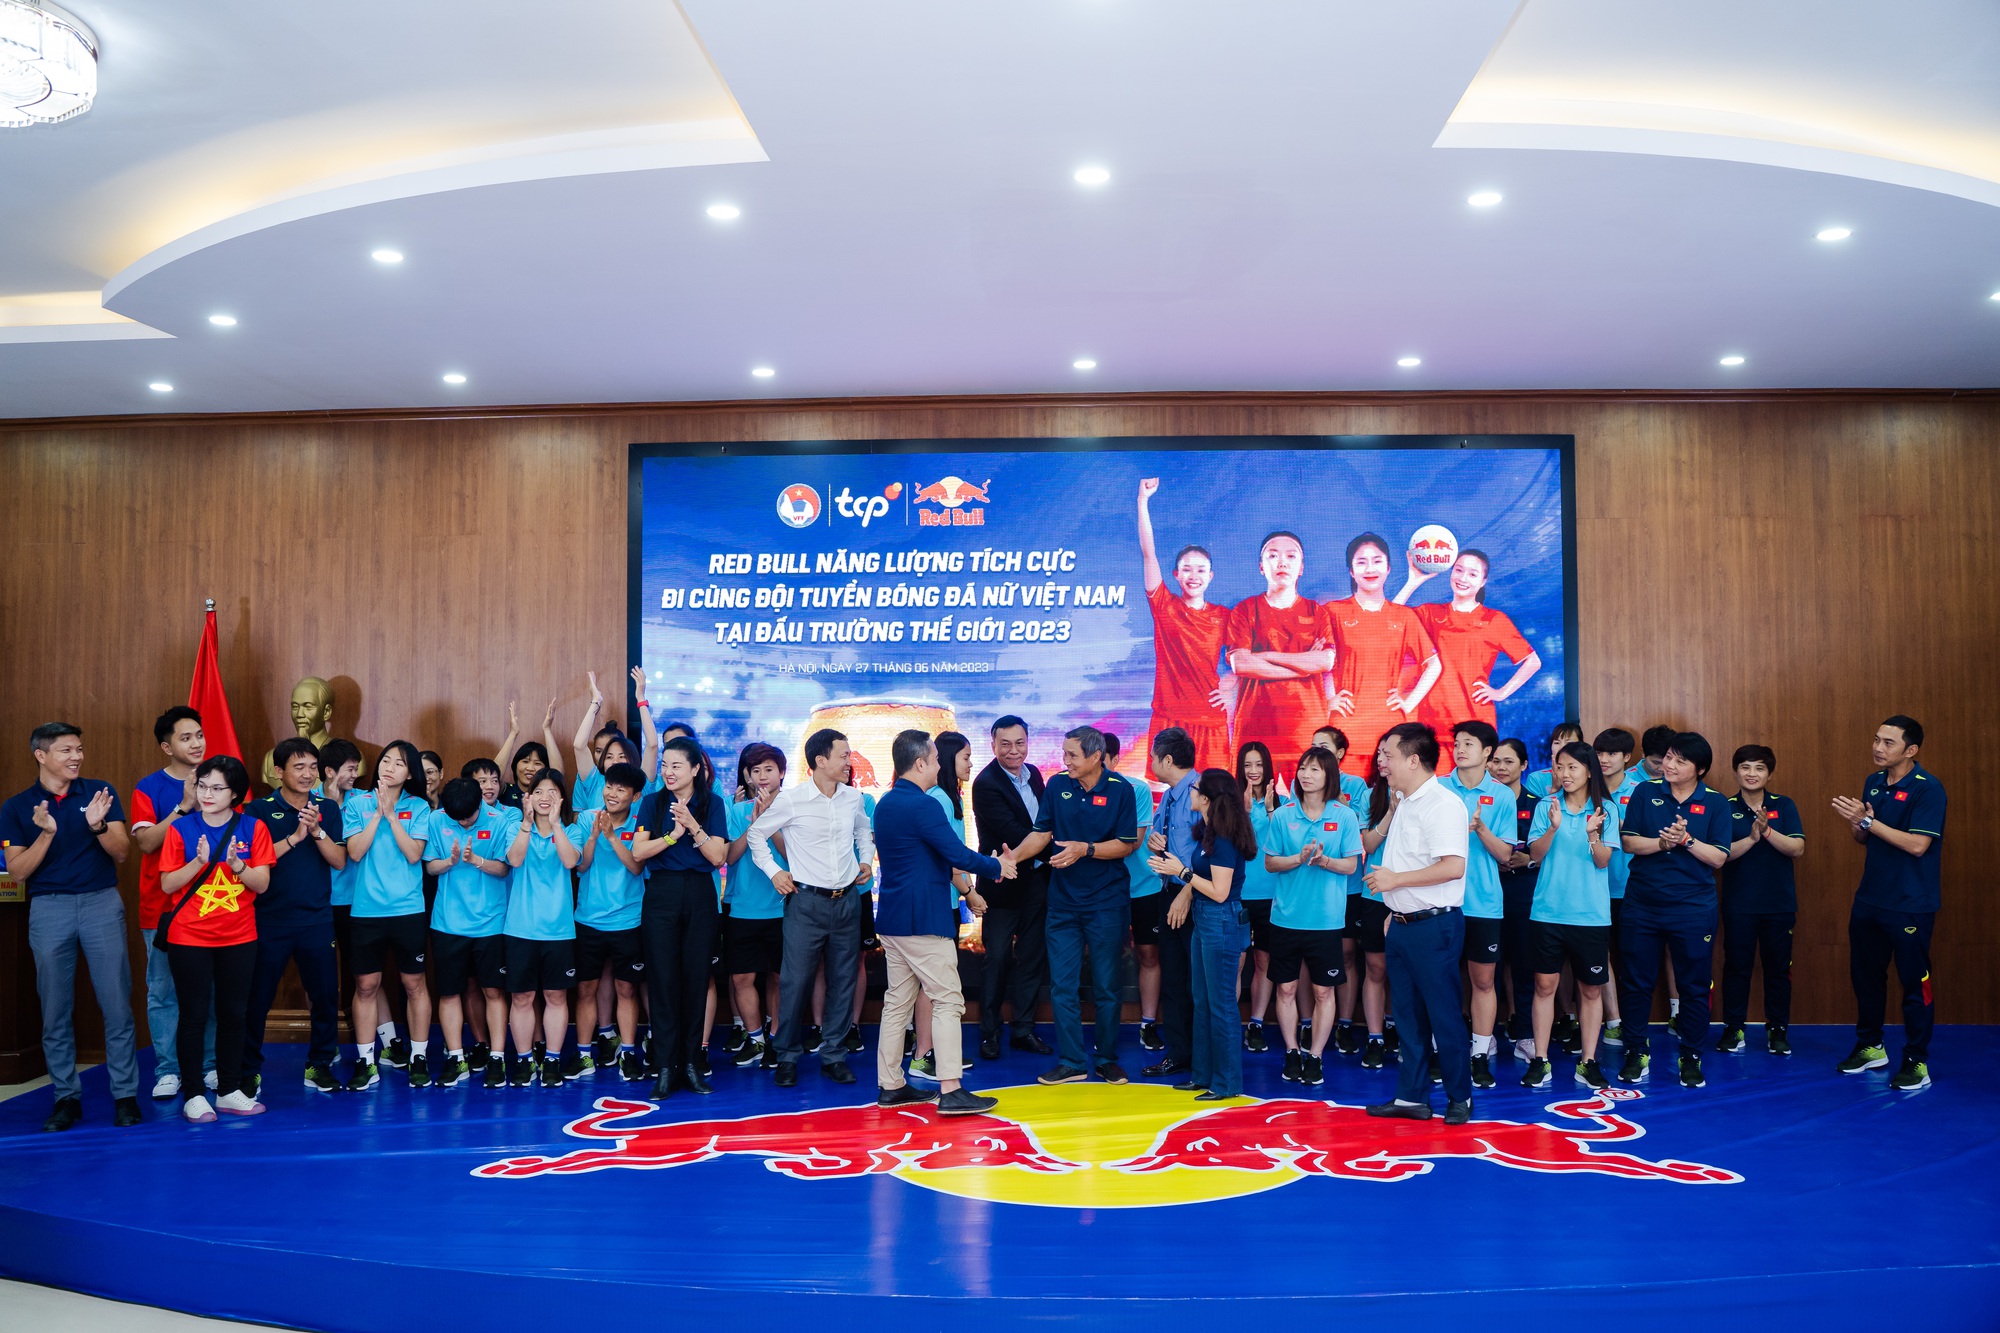 Xúc động khoảnh khắc tiễn đội tuyển nữ Việt Nam hướng đến World Cup 2023 - Ảnh 2.